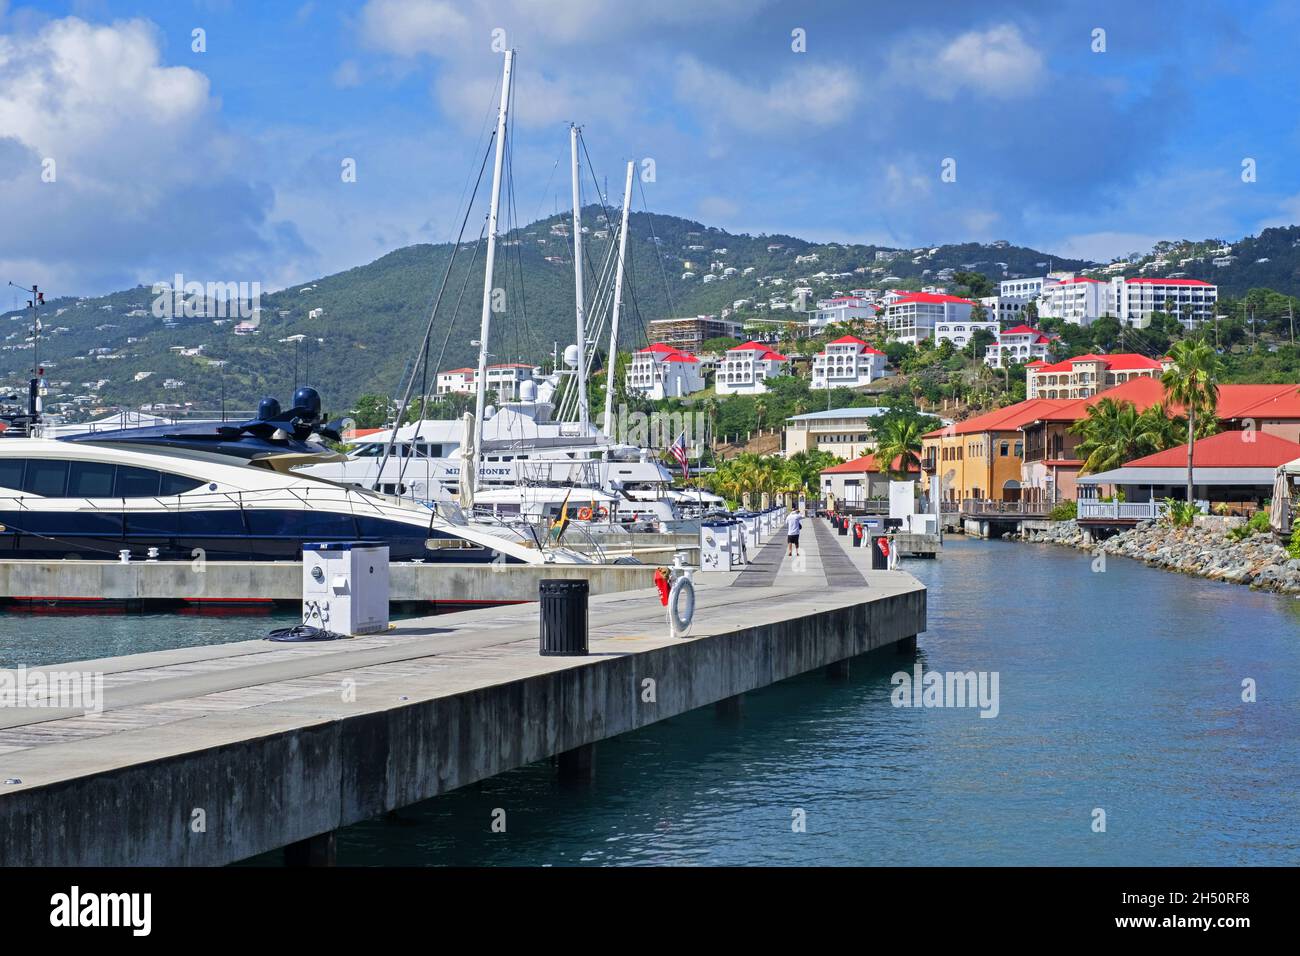 Barche a vela e barche ormeggiate nel porto / porto di Charlotte Amalie sull'isola di Saint Thomas, Isole Vergini americane, piccole Antille, Mar dei Caraibi Foto Stock